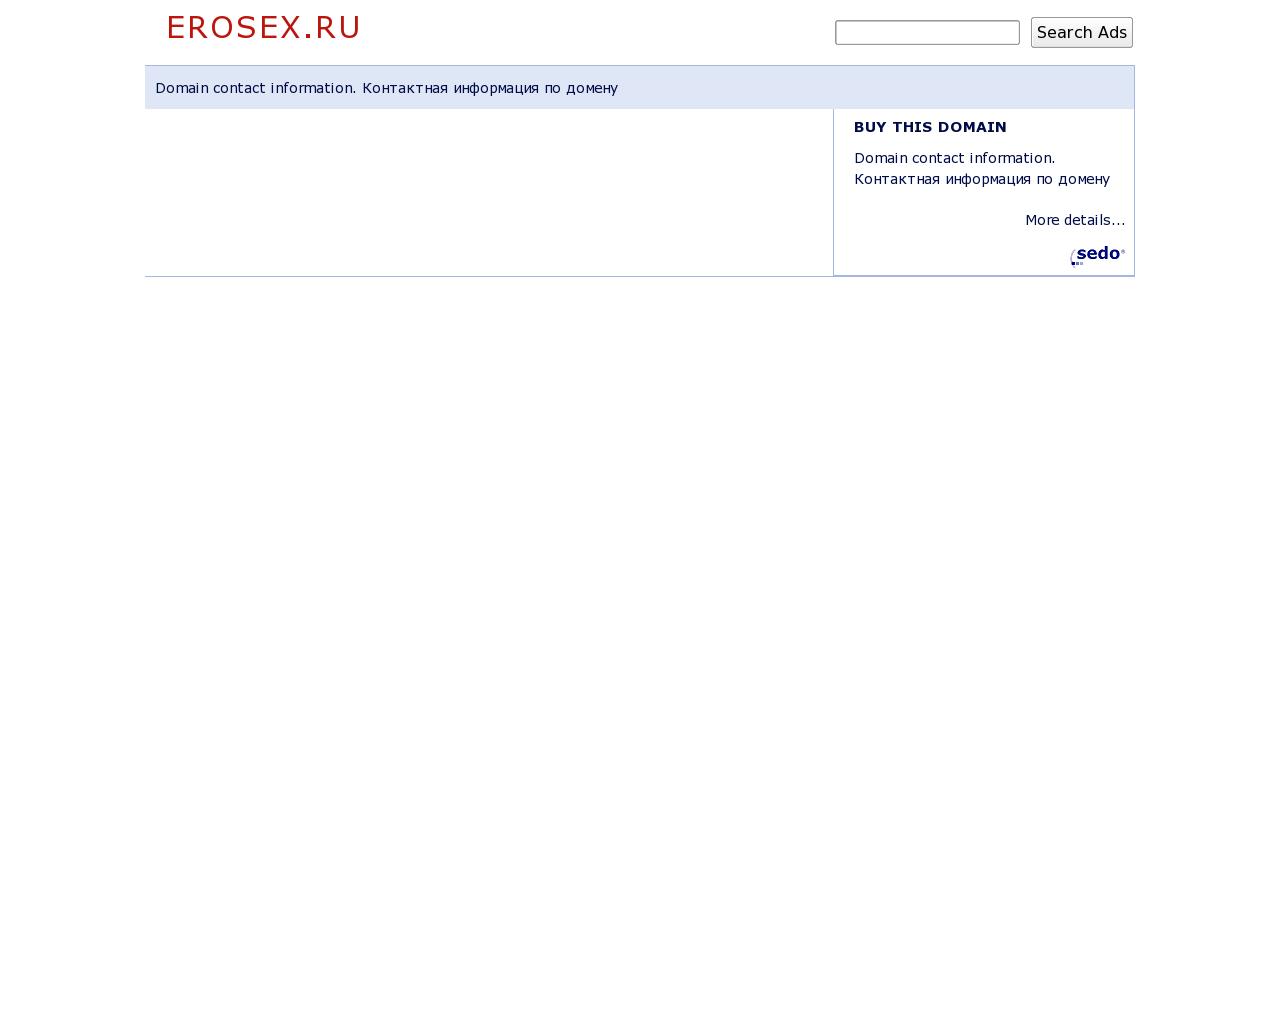 Изображение сайта erosex.ru в разрешении 1280x1024